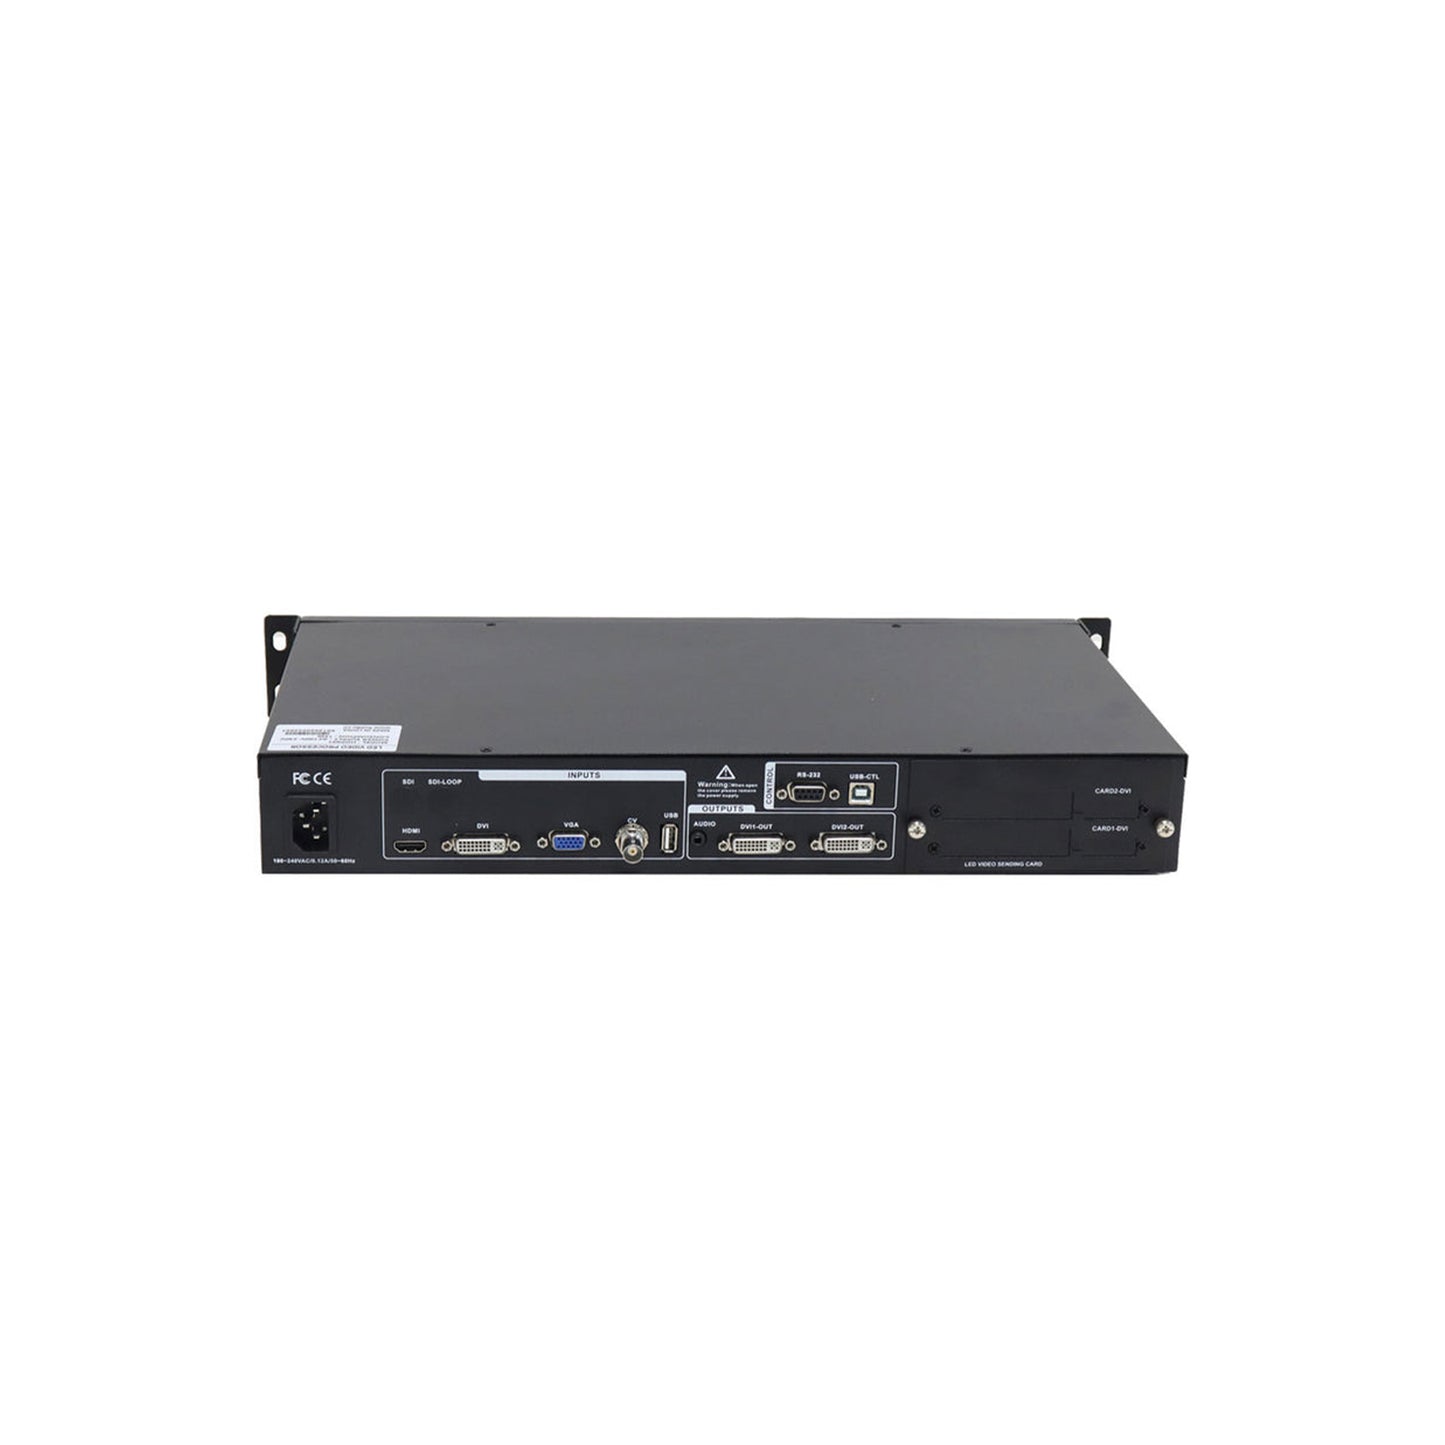 HDP601 Video Processor